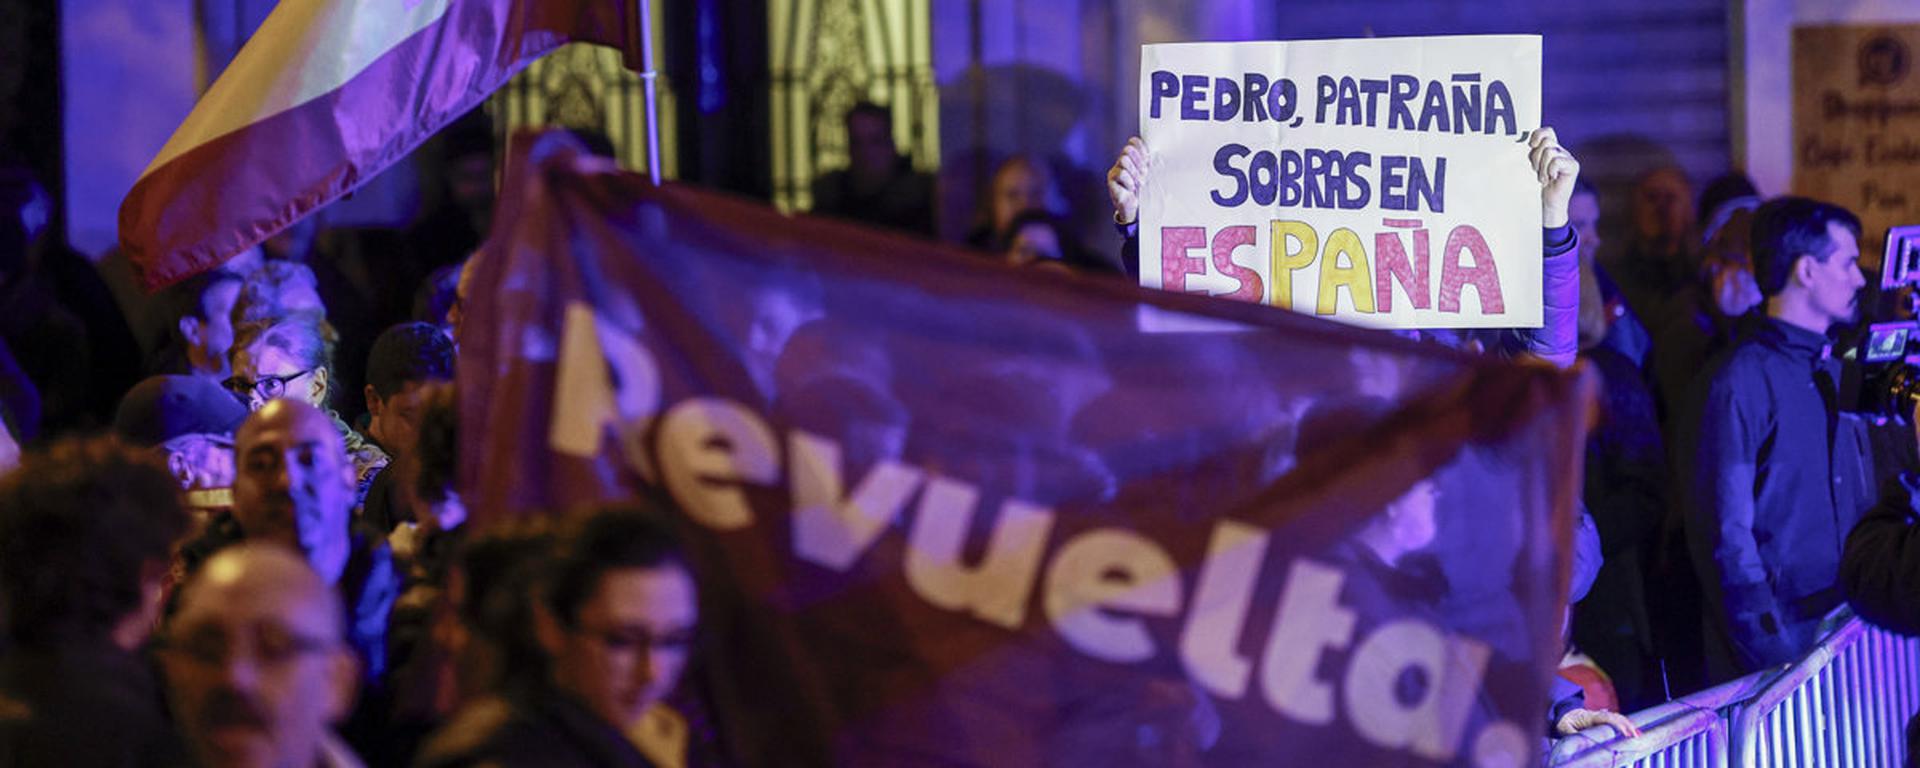 El acuerdo de Pedro Sánchez con los separatistas catalanes que ha desatado protestas en España